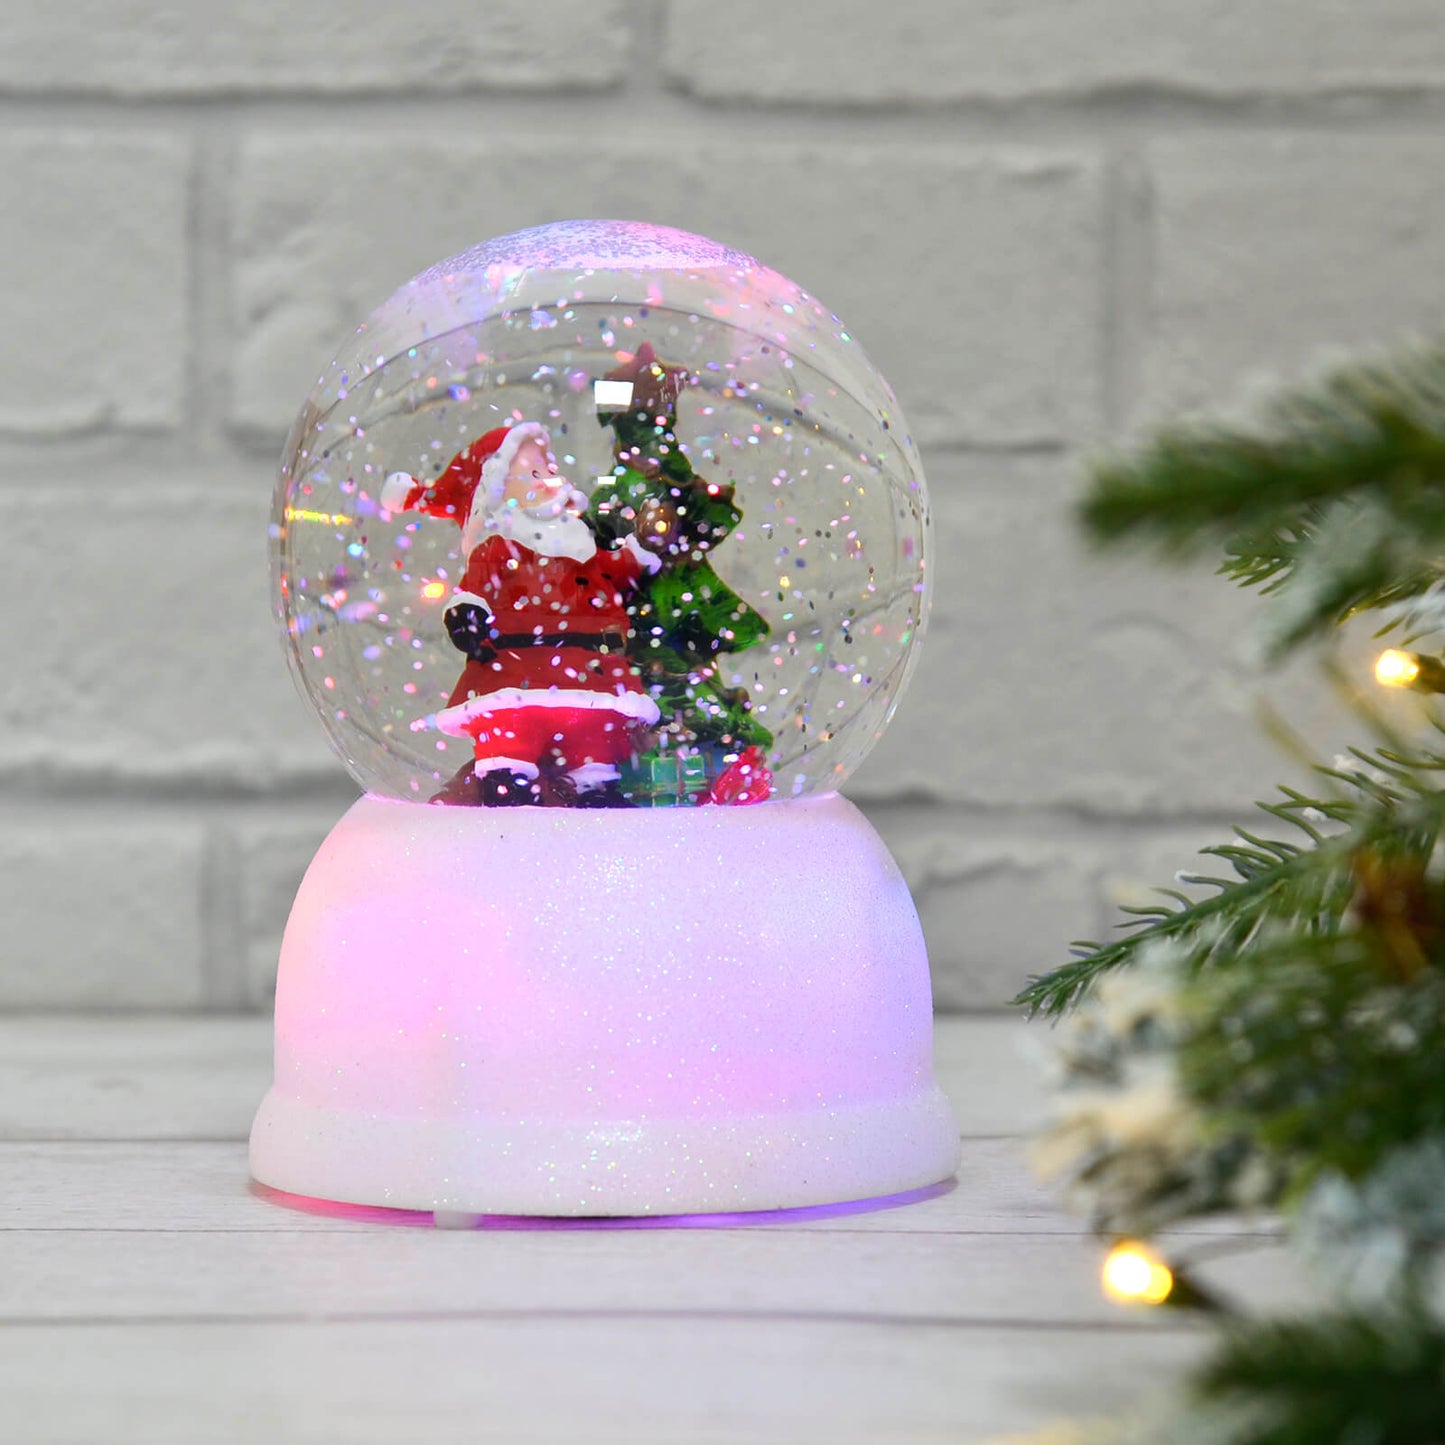 Mr Crimbo Santa Globe Glitter Water Spinner Ornament - MrCrimbo.co.uk -XS6369 - -christmas decor